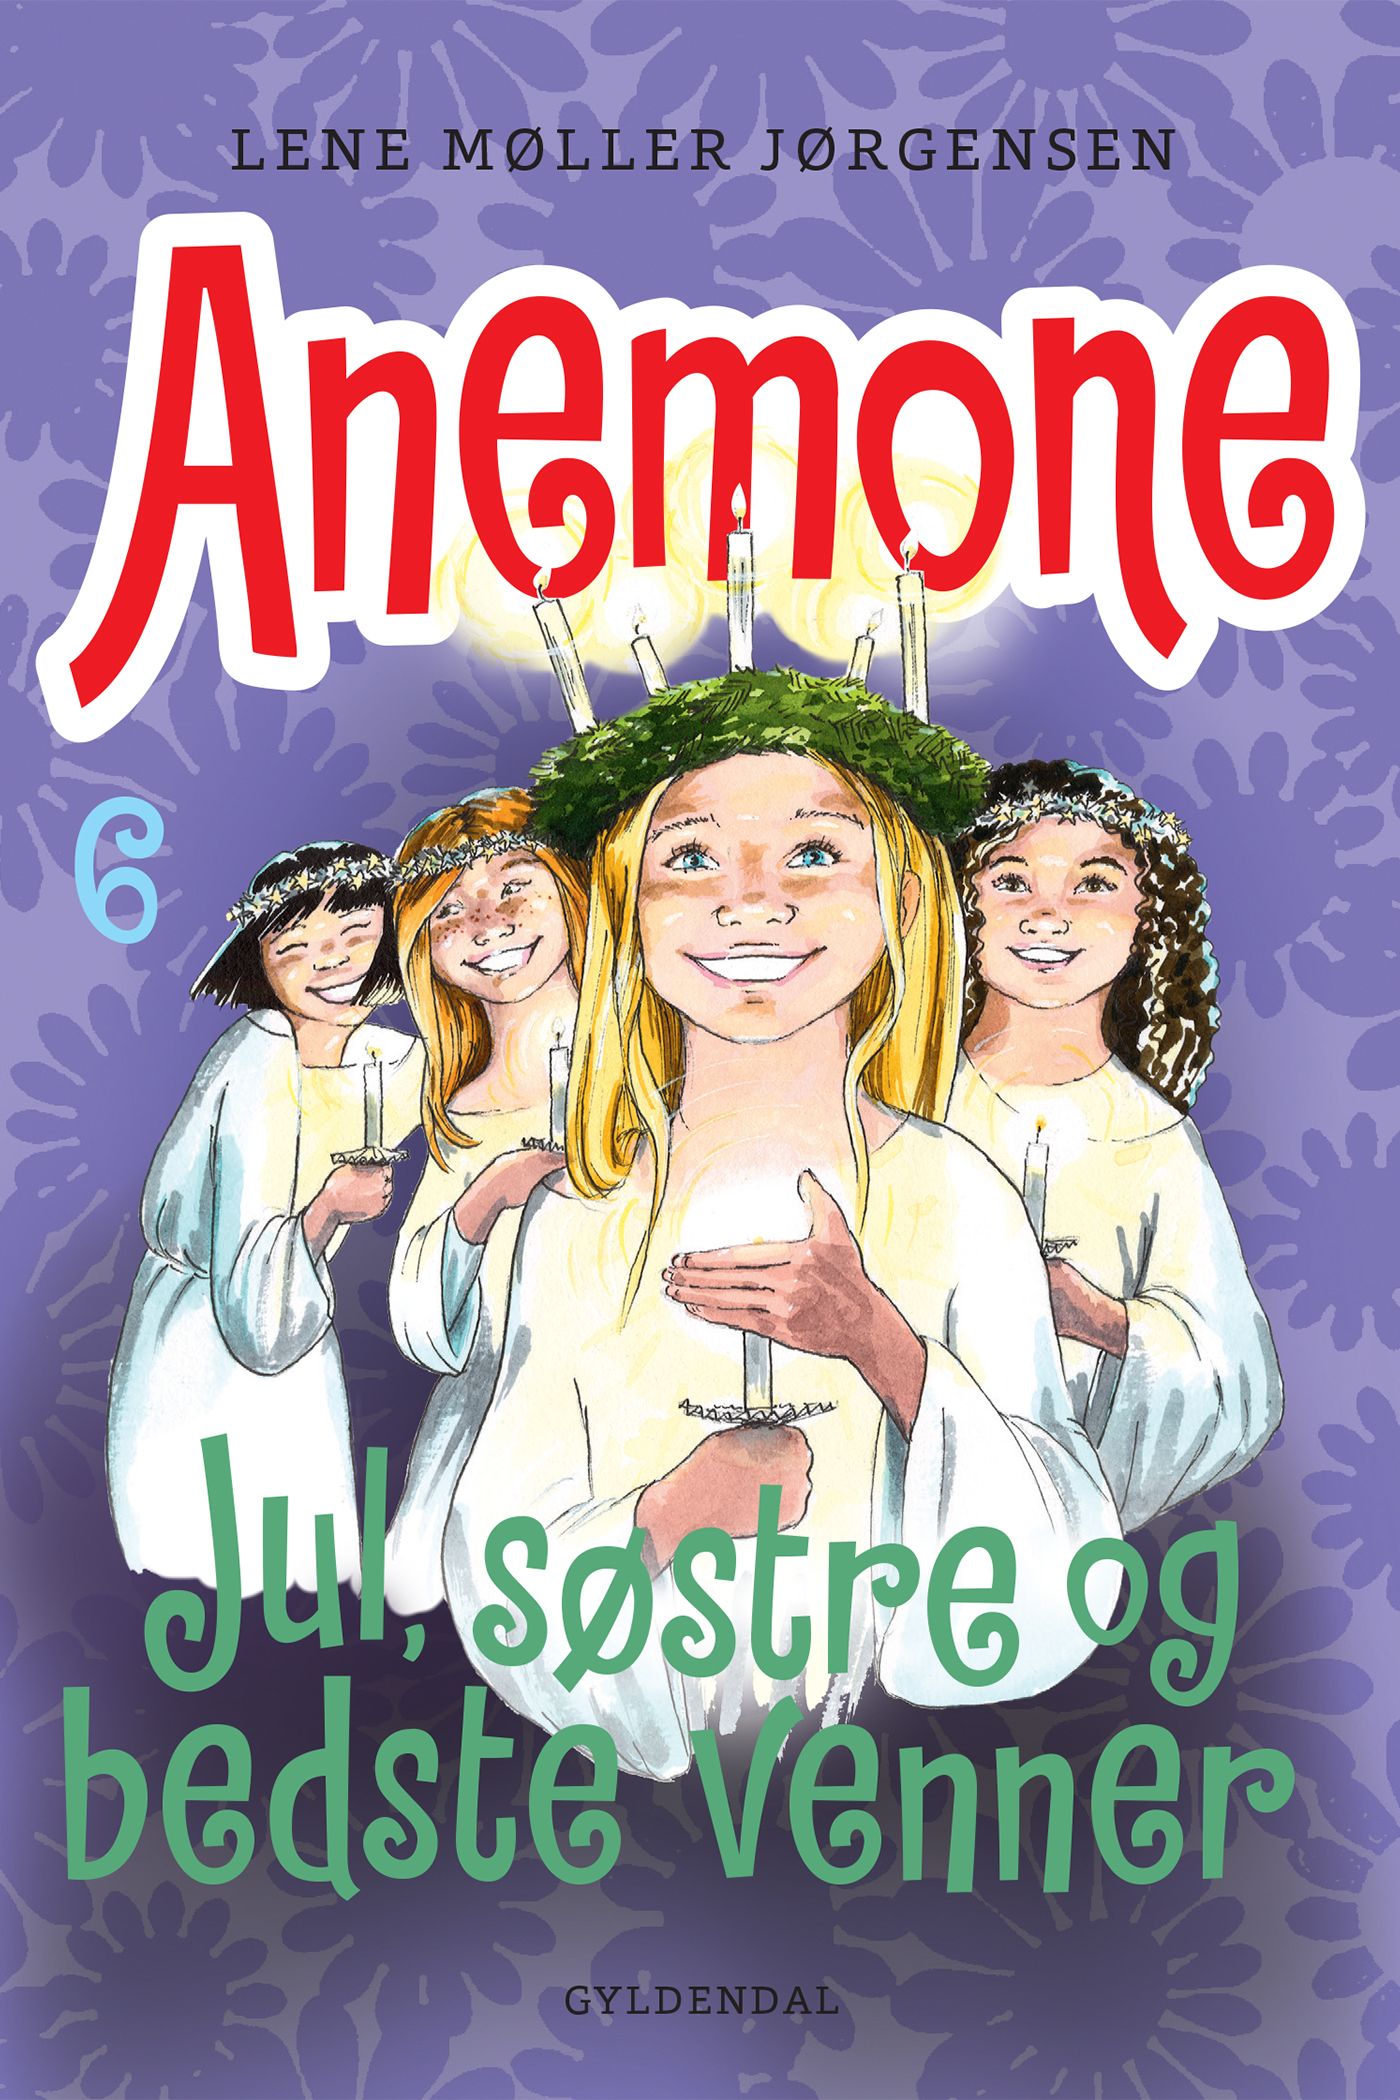 Anemone 6 - Jul, søstre og bedste venner, e-bog af Lene Møller Jørgensen